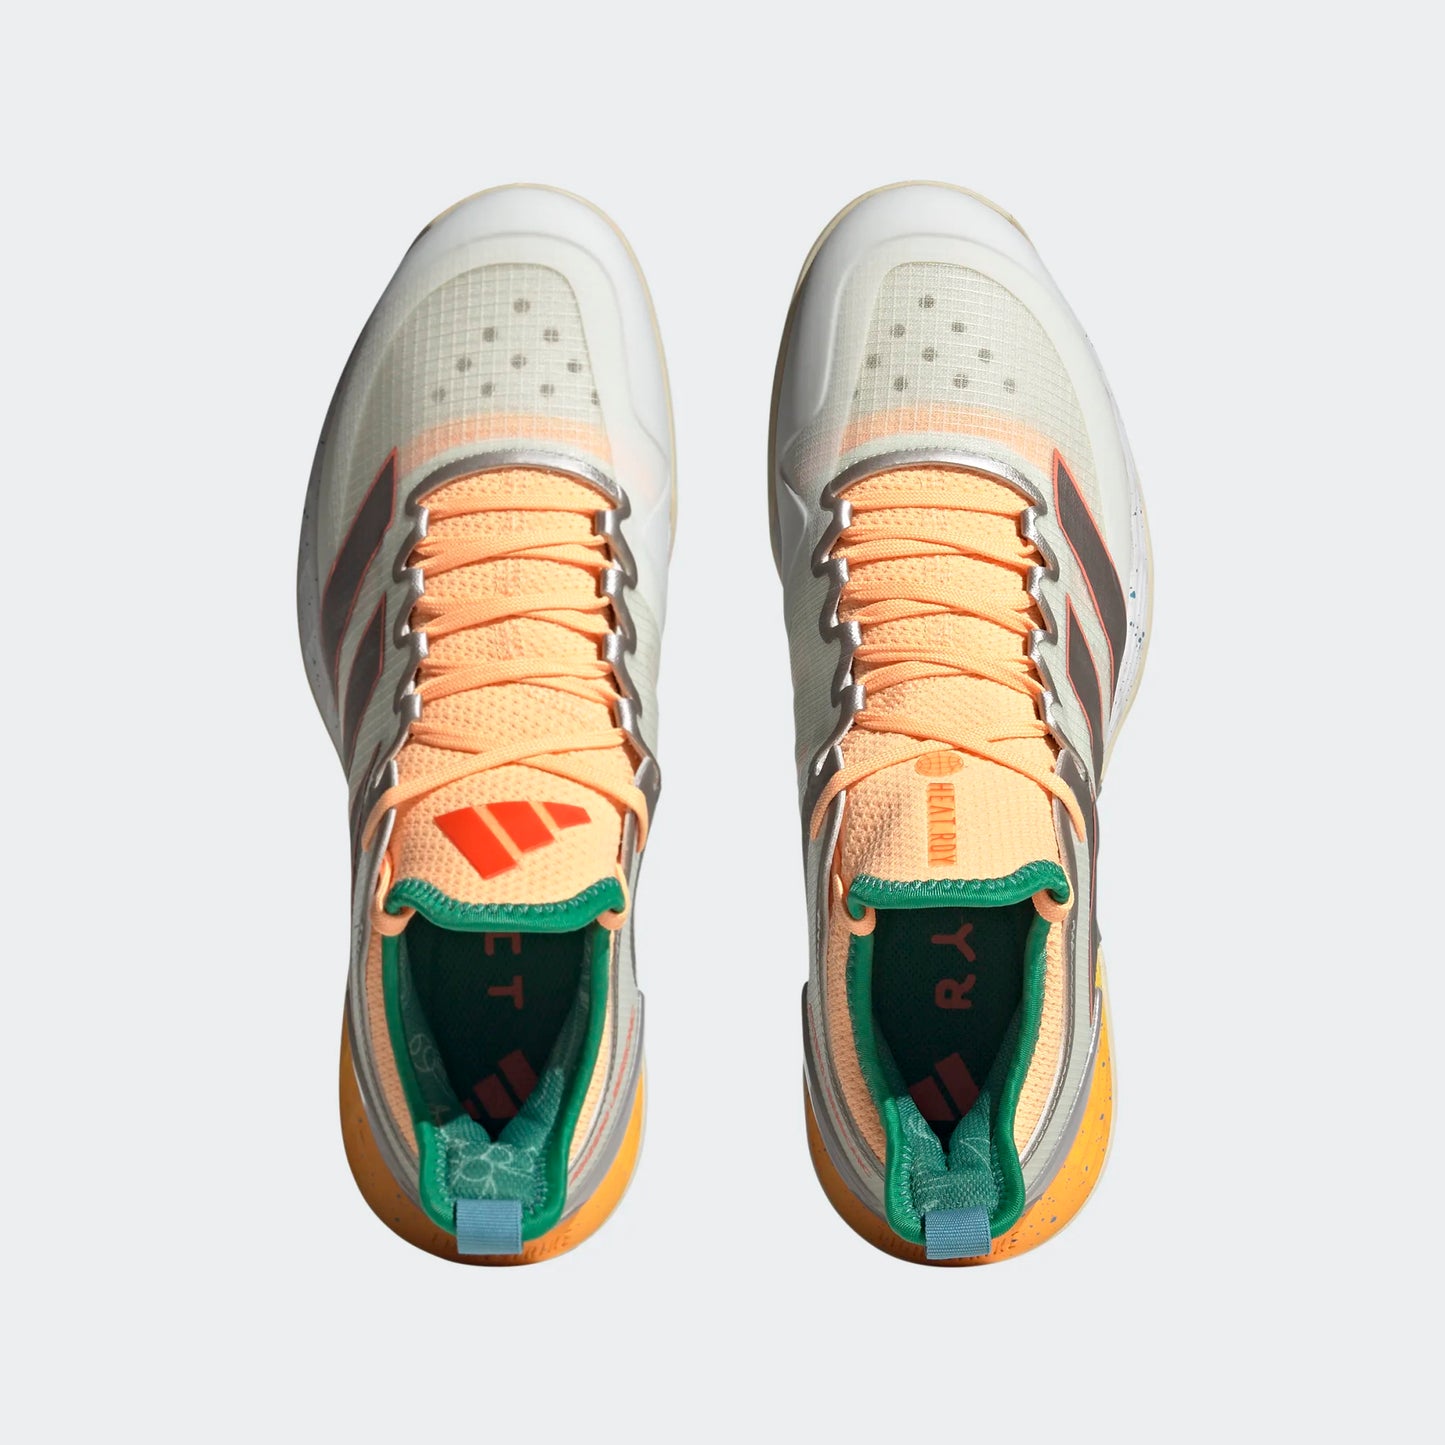 adidas Adizero Ubersonic 4 men tennis shoes - Taumet/Orange HQ8389